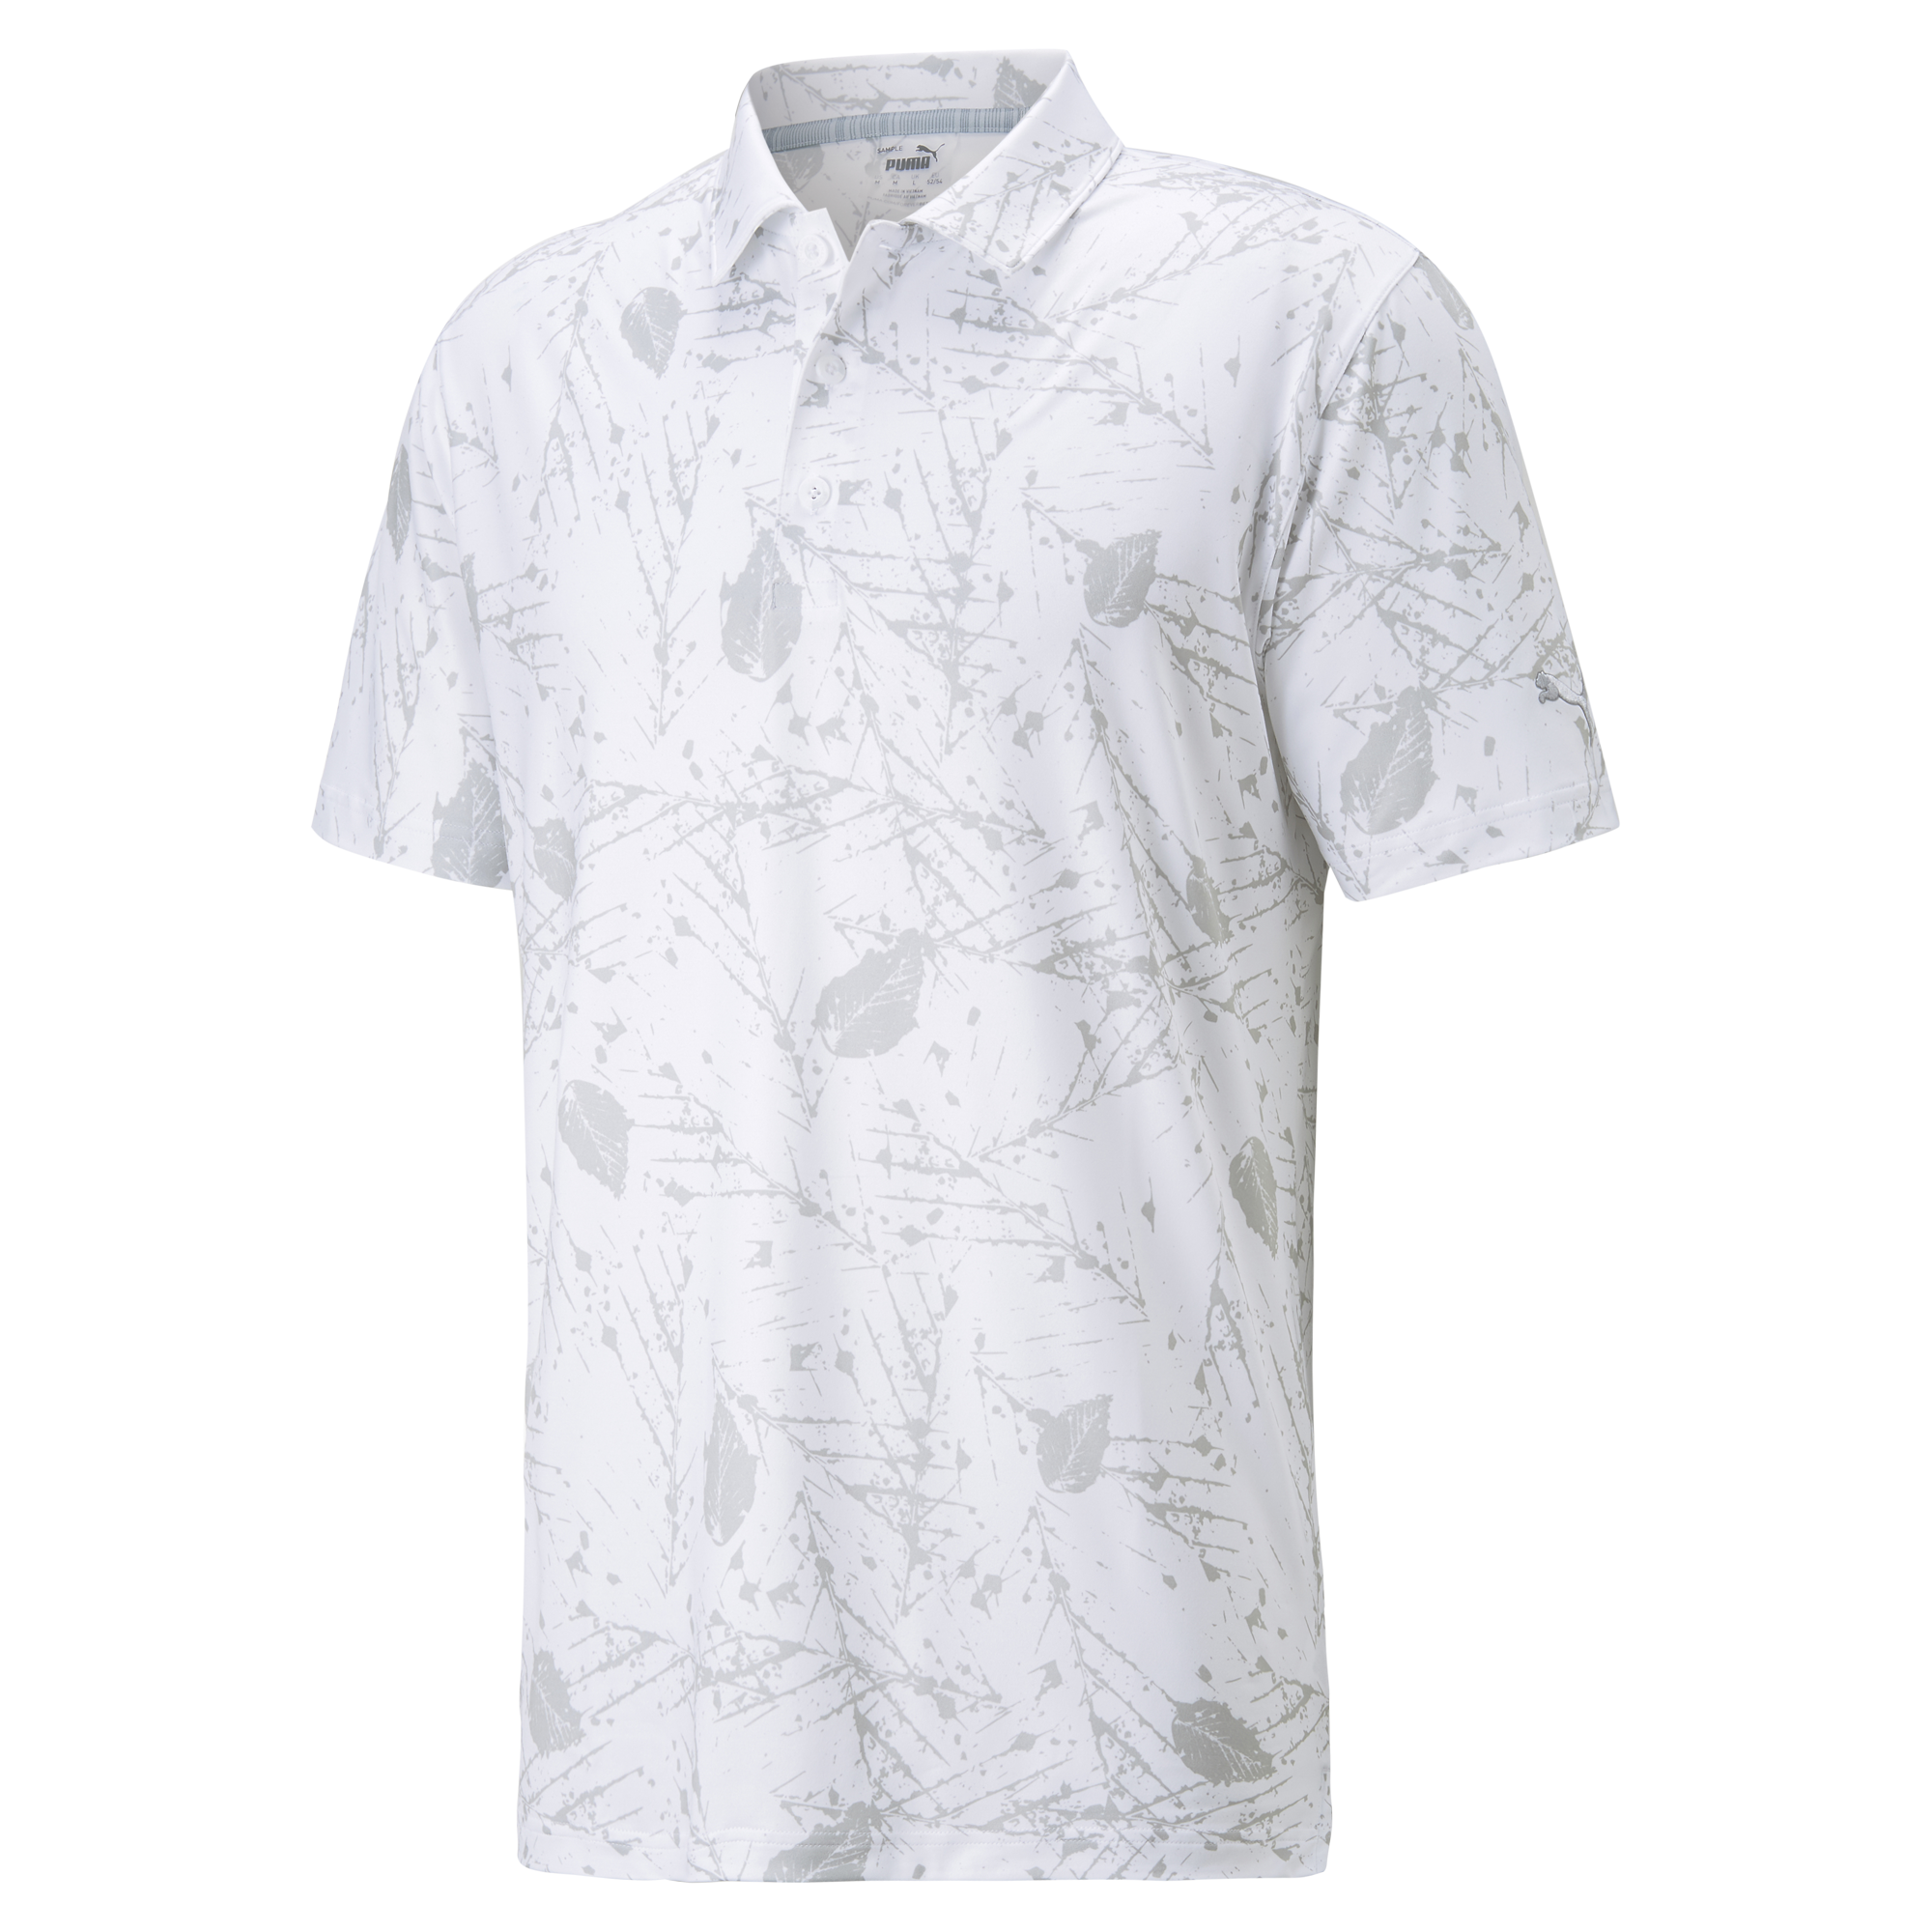 PUMA Cloudspun Frequency Polo Shirt